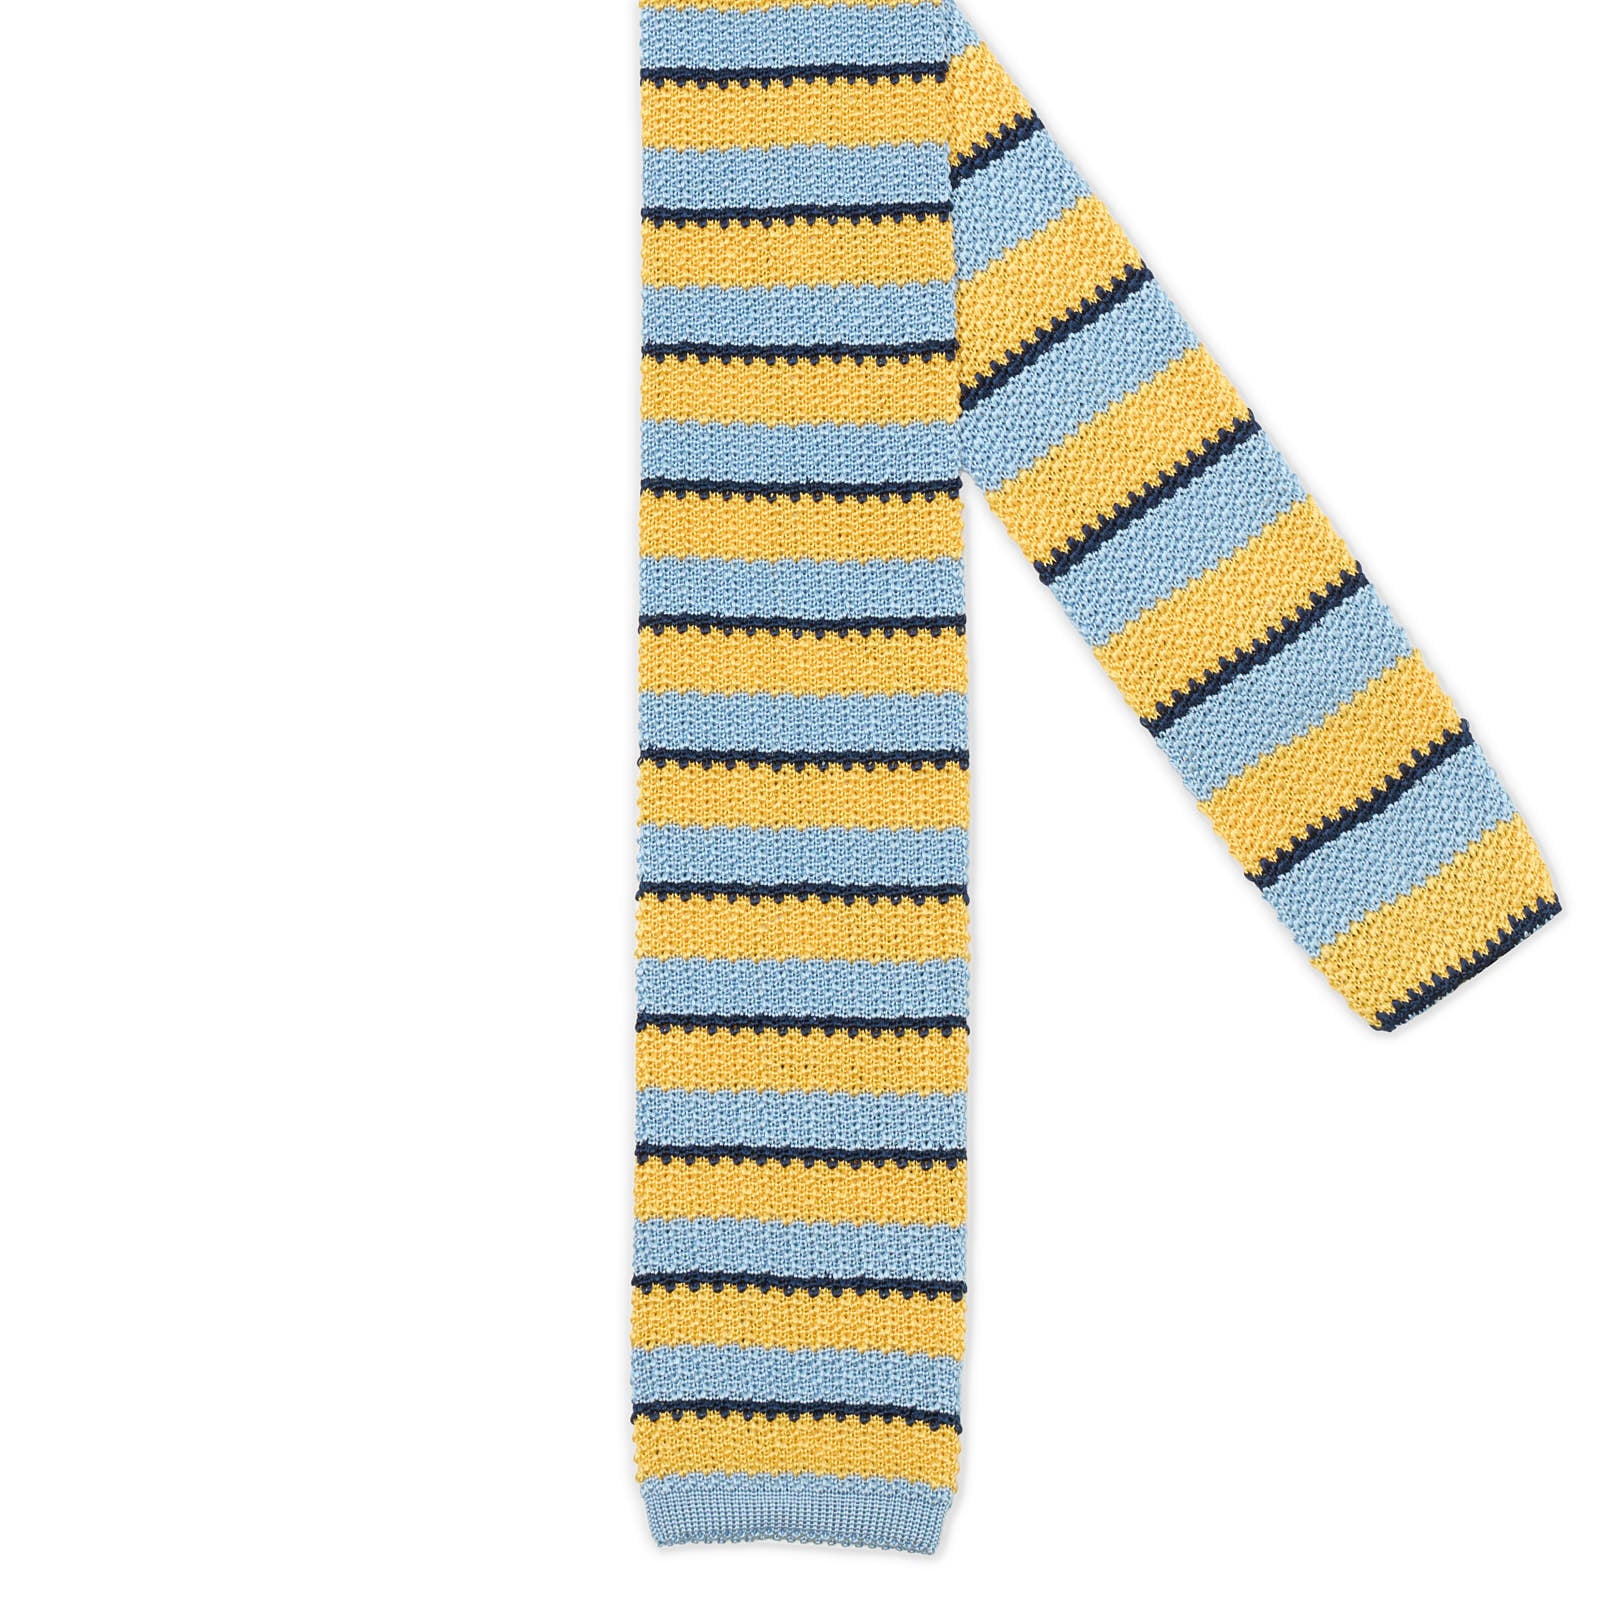 MATTABISCH Blue-Yellow Striped Silk Knit Tie NEW